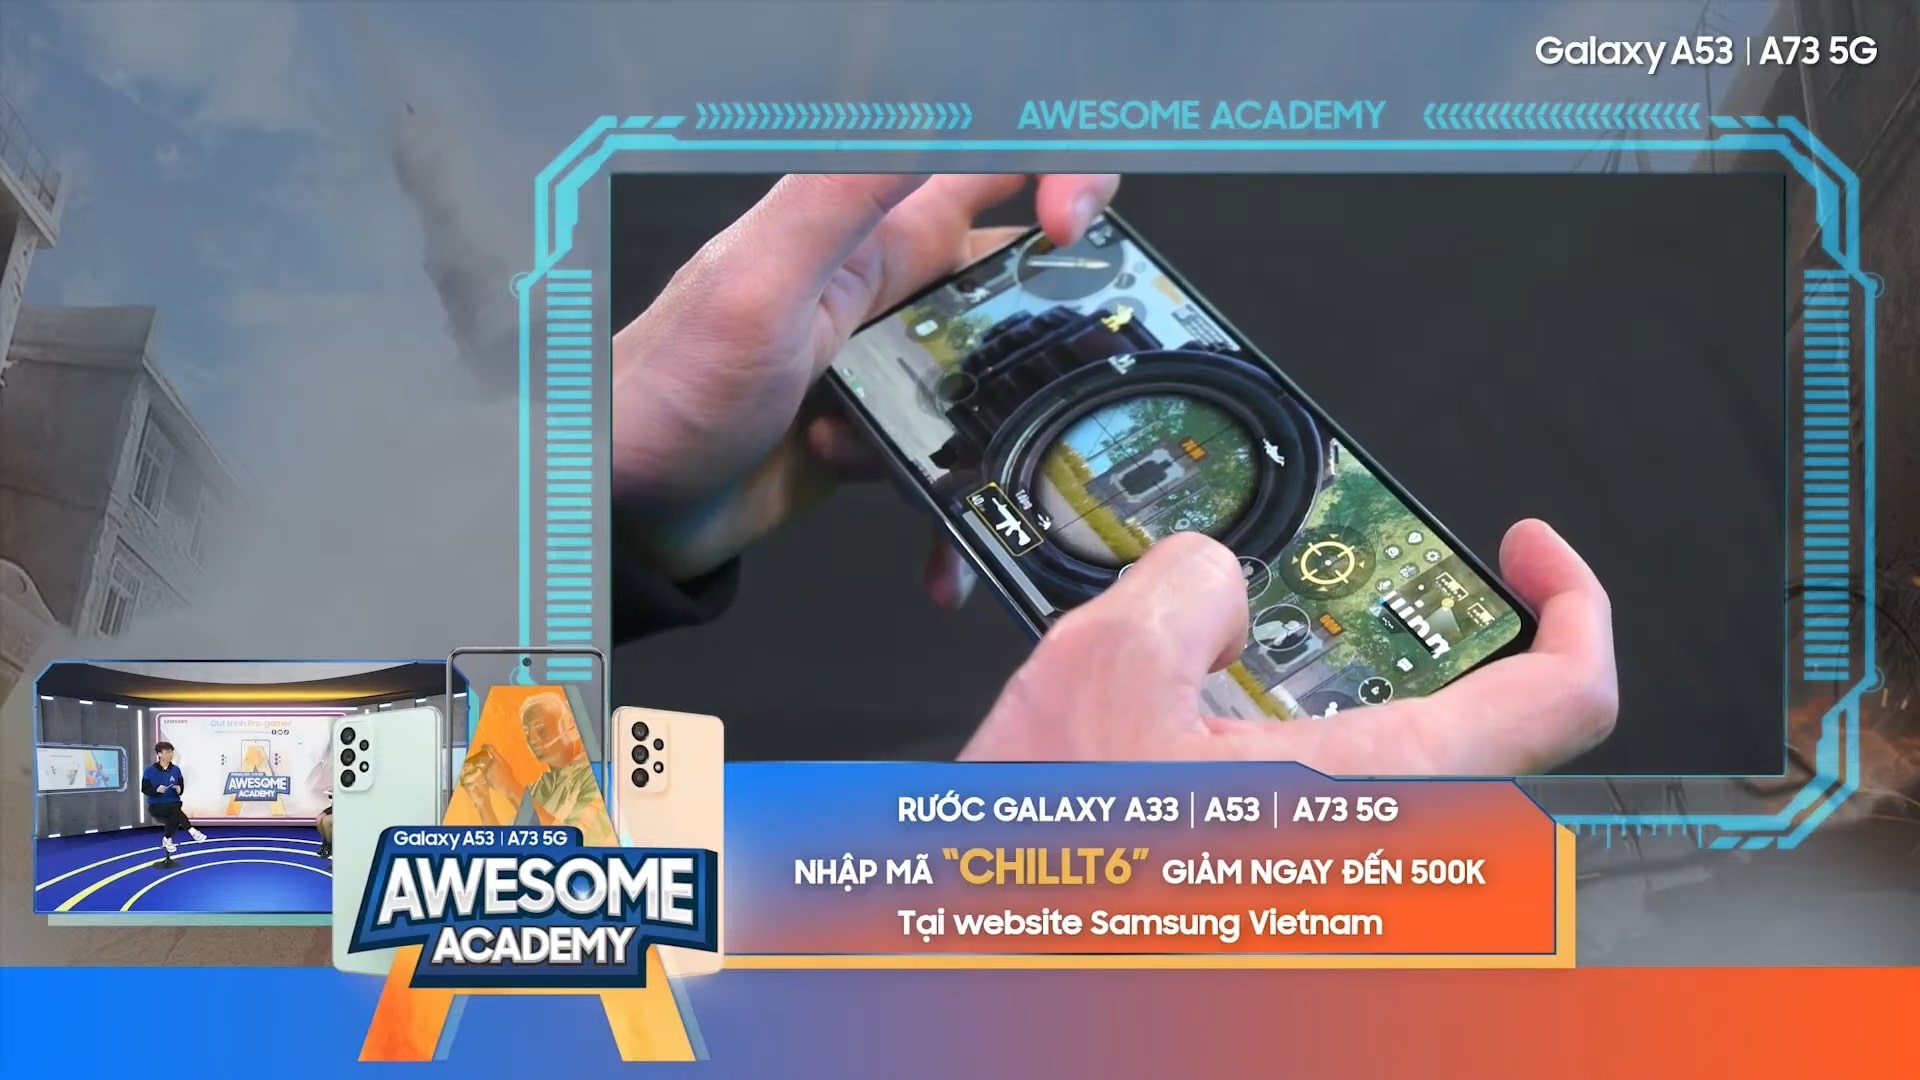 Trực tiếp Awesome Academy tập 2 của Samsung Galaxy A - "Ó sầm" gọi tên Bộ Bim tập 2 cùng các kiến thức bổ ích